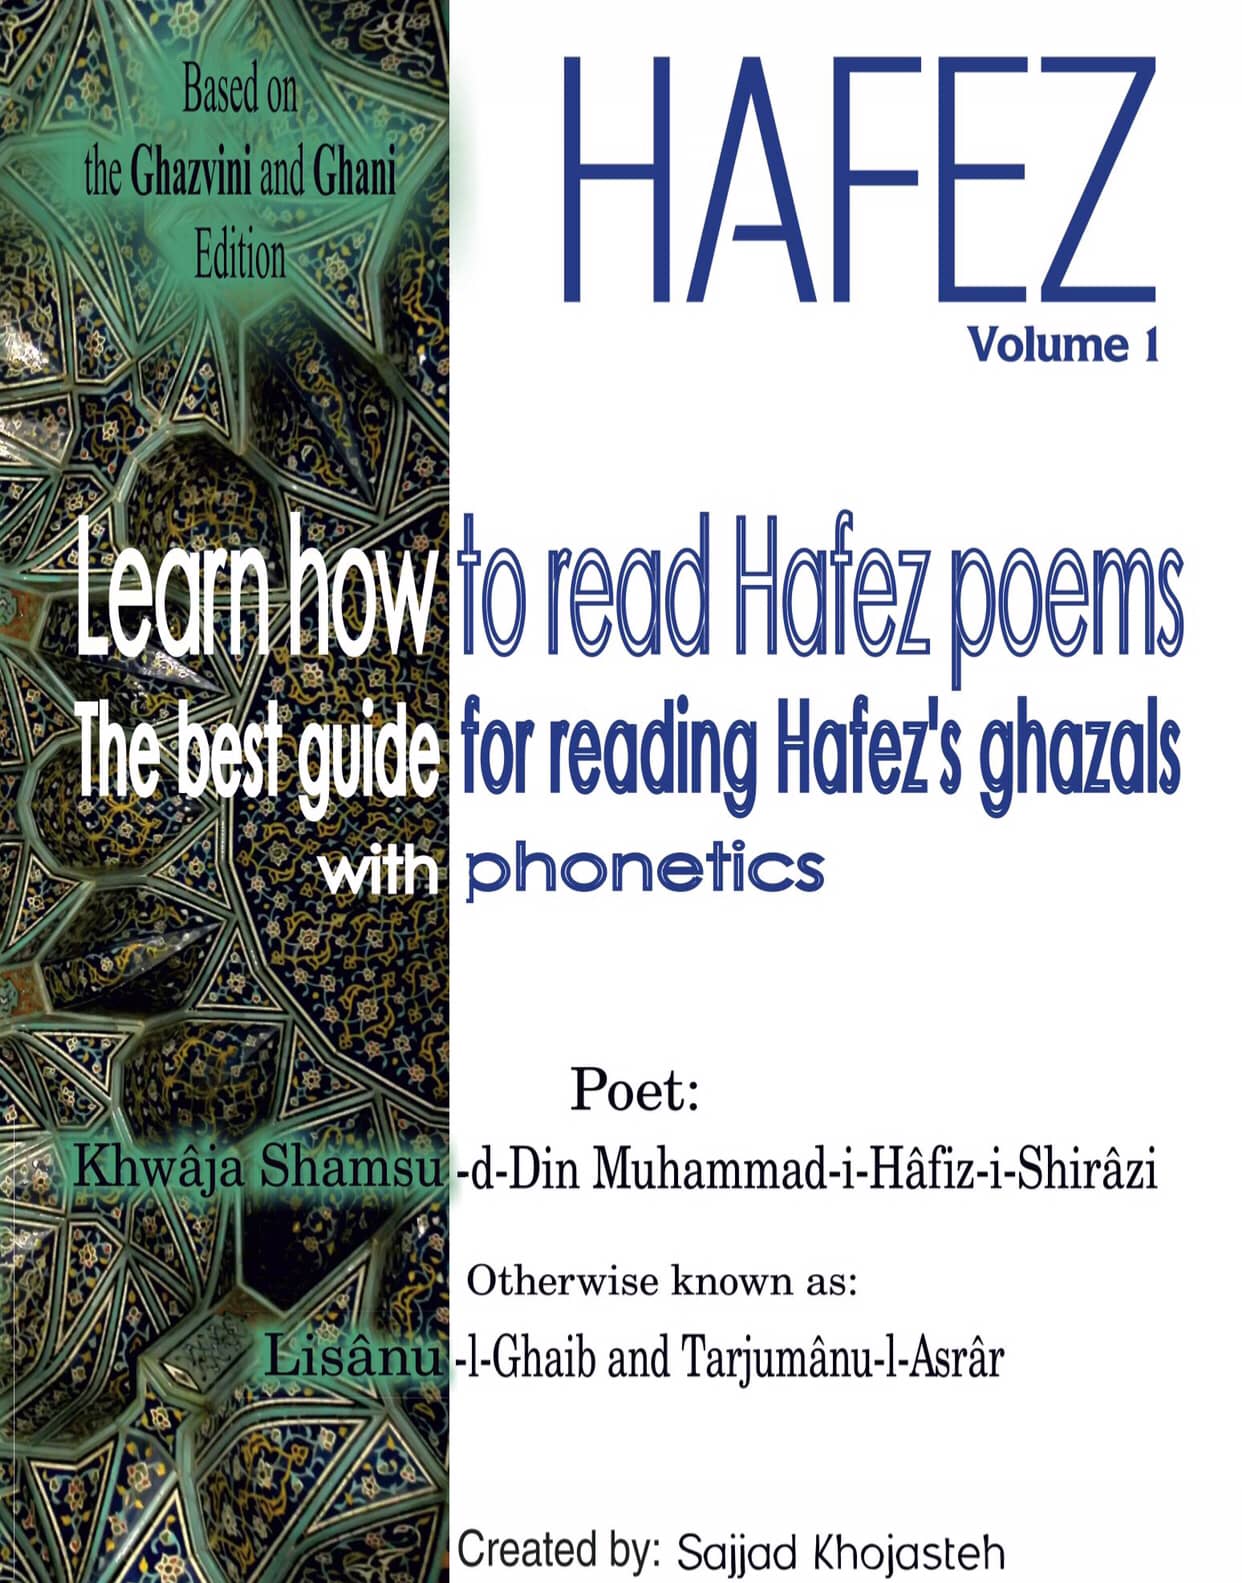 Read Hafez Poems